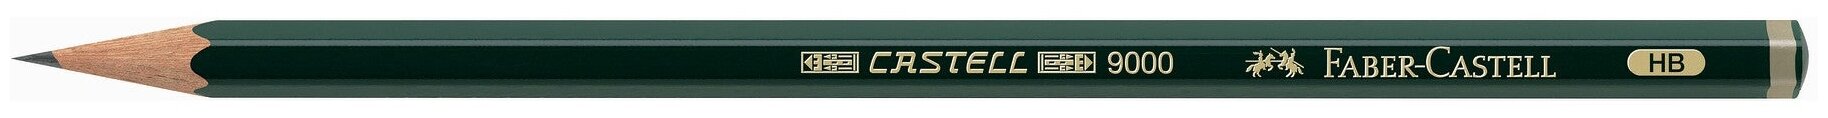 Карандаш чернографитовый Faber-Castell Castell 9000 твердость 2B 4B B HB 6В 8В в металлической коробке 6 шт. - фото №4